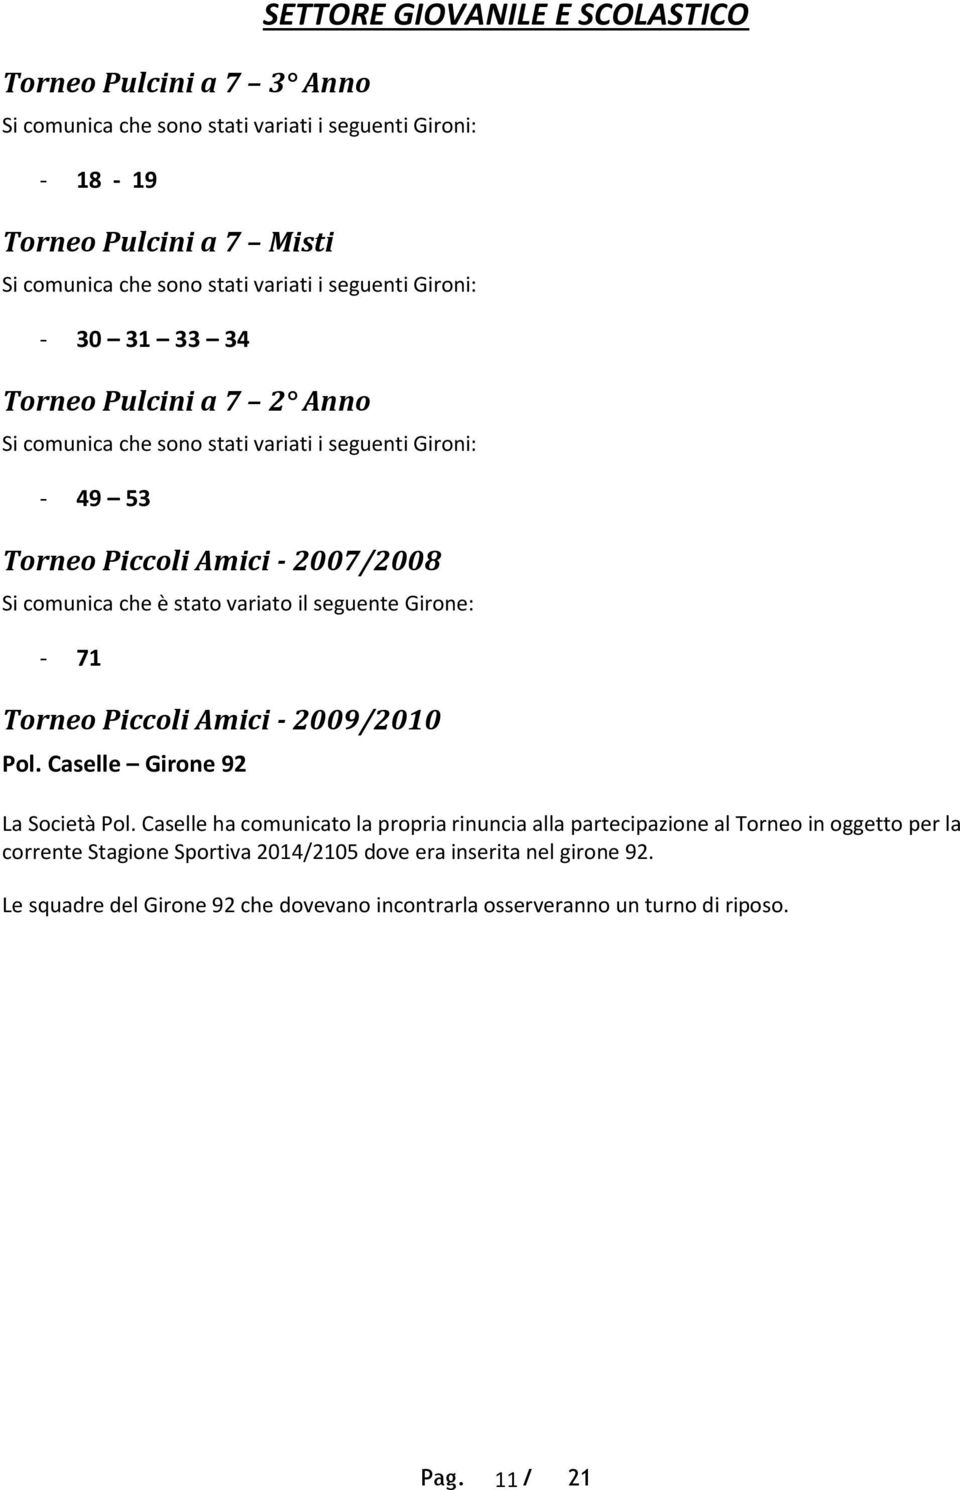 71 Torneo Piccoli Amici - 2009/2010 Pol. Caselle Girone 92 SETTORE GIOVANILE E SCOLASTICO La Società Pol.